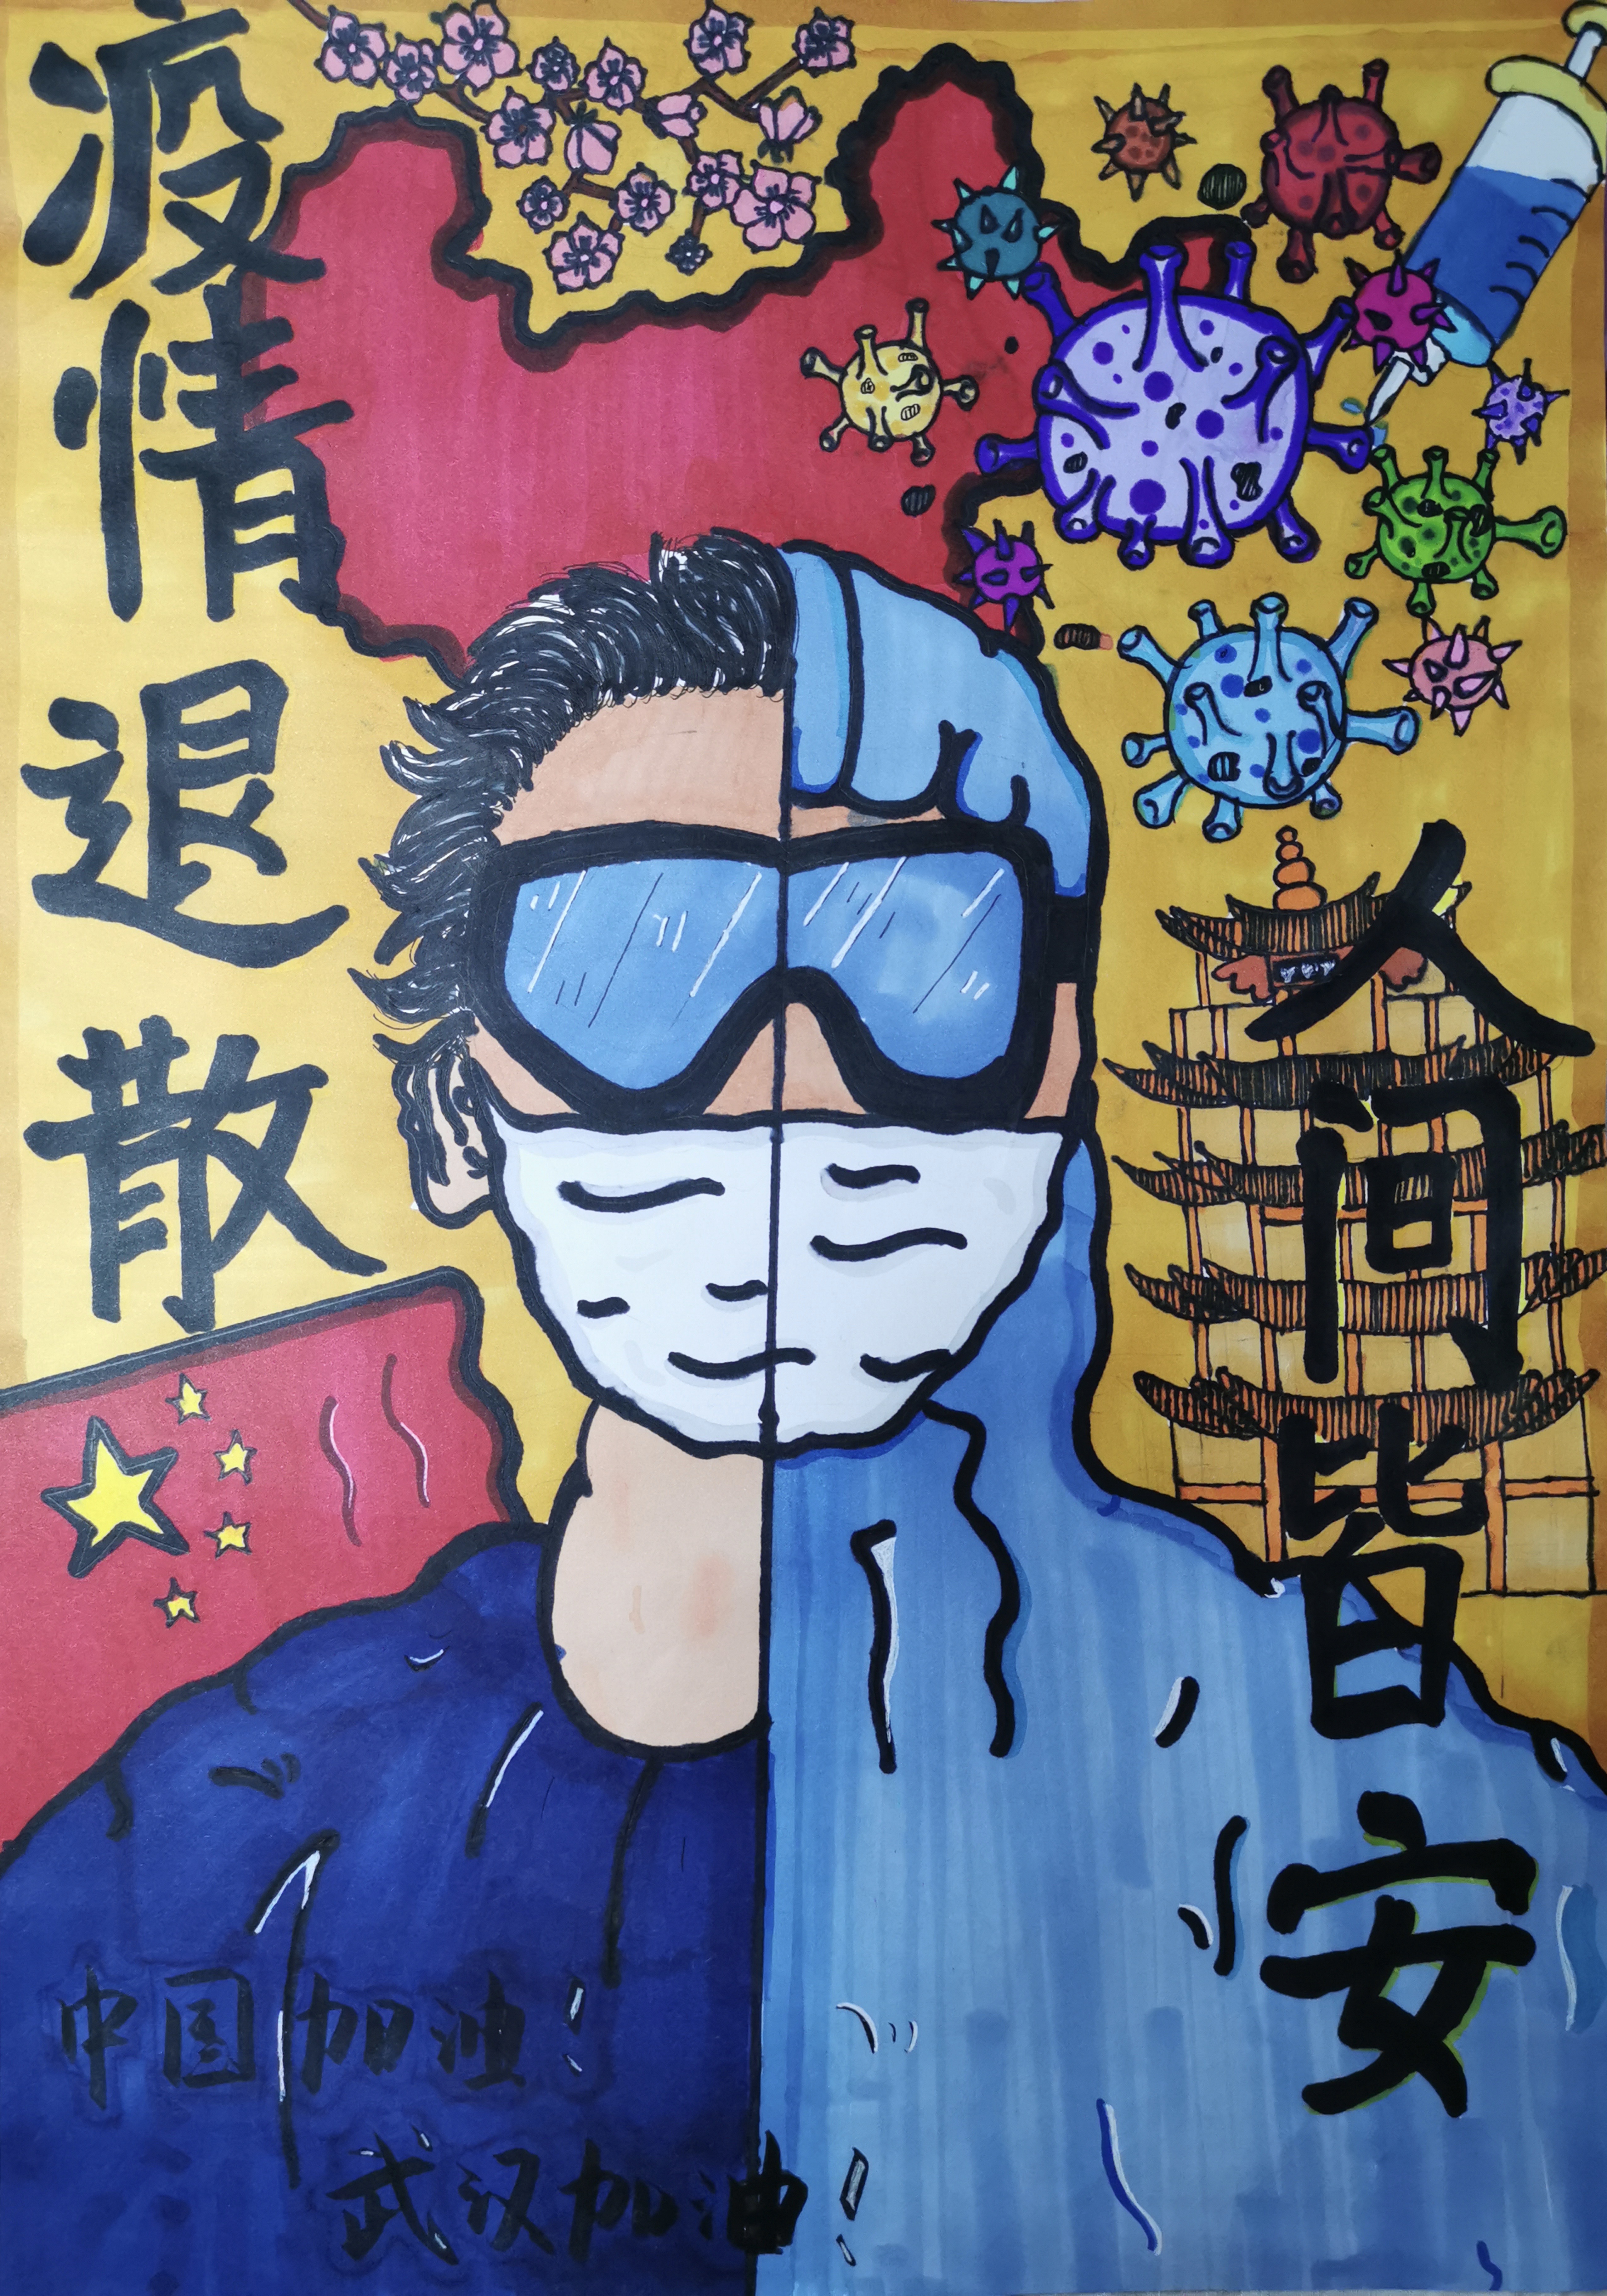 用画笔致敬英雄!郑州高新区实验小学书画作品传递正能量